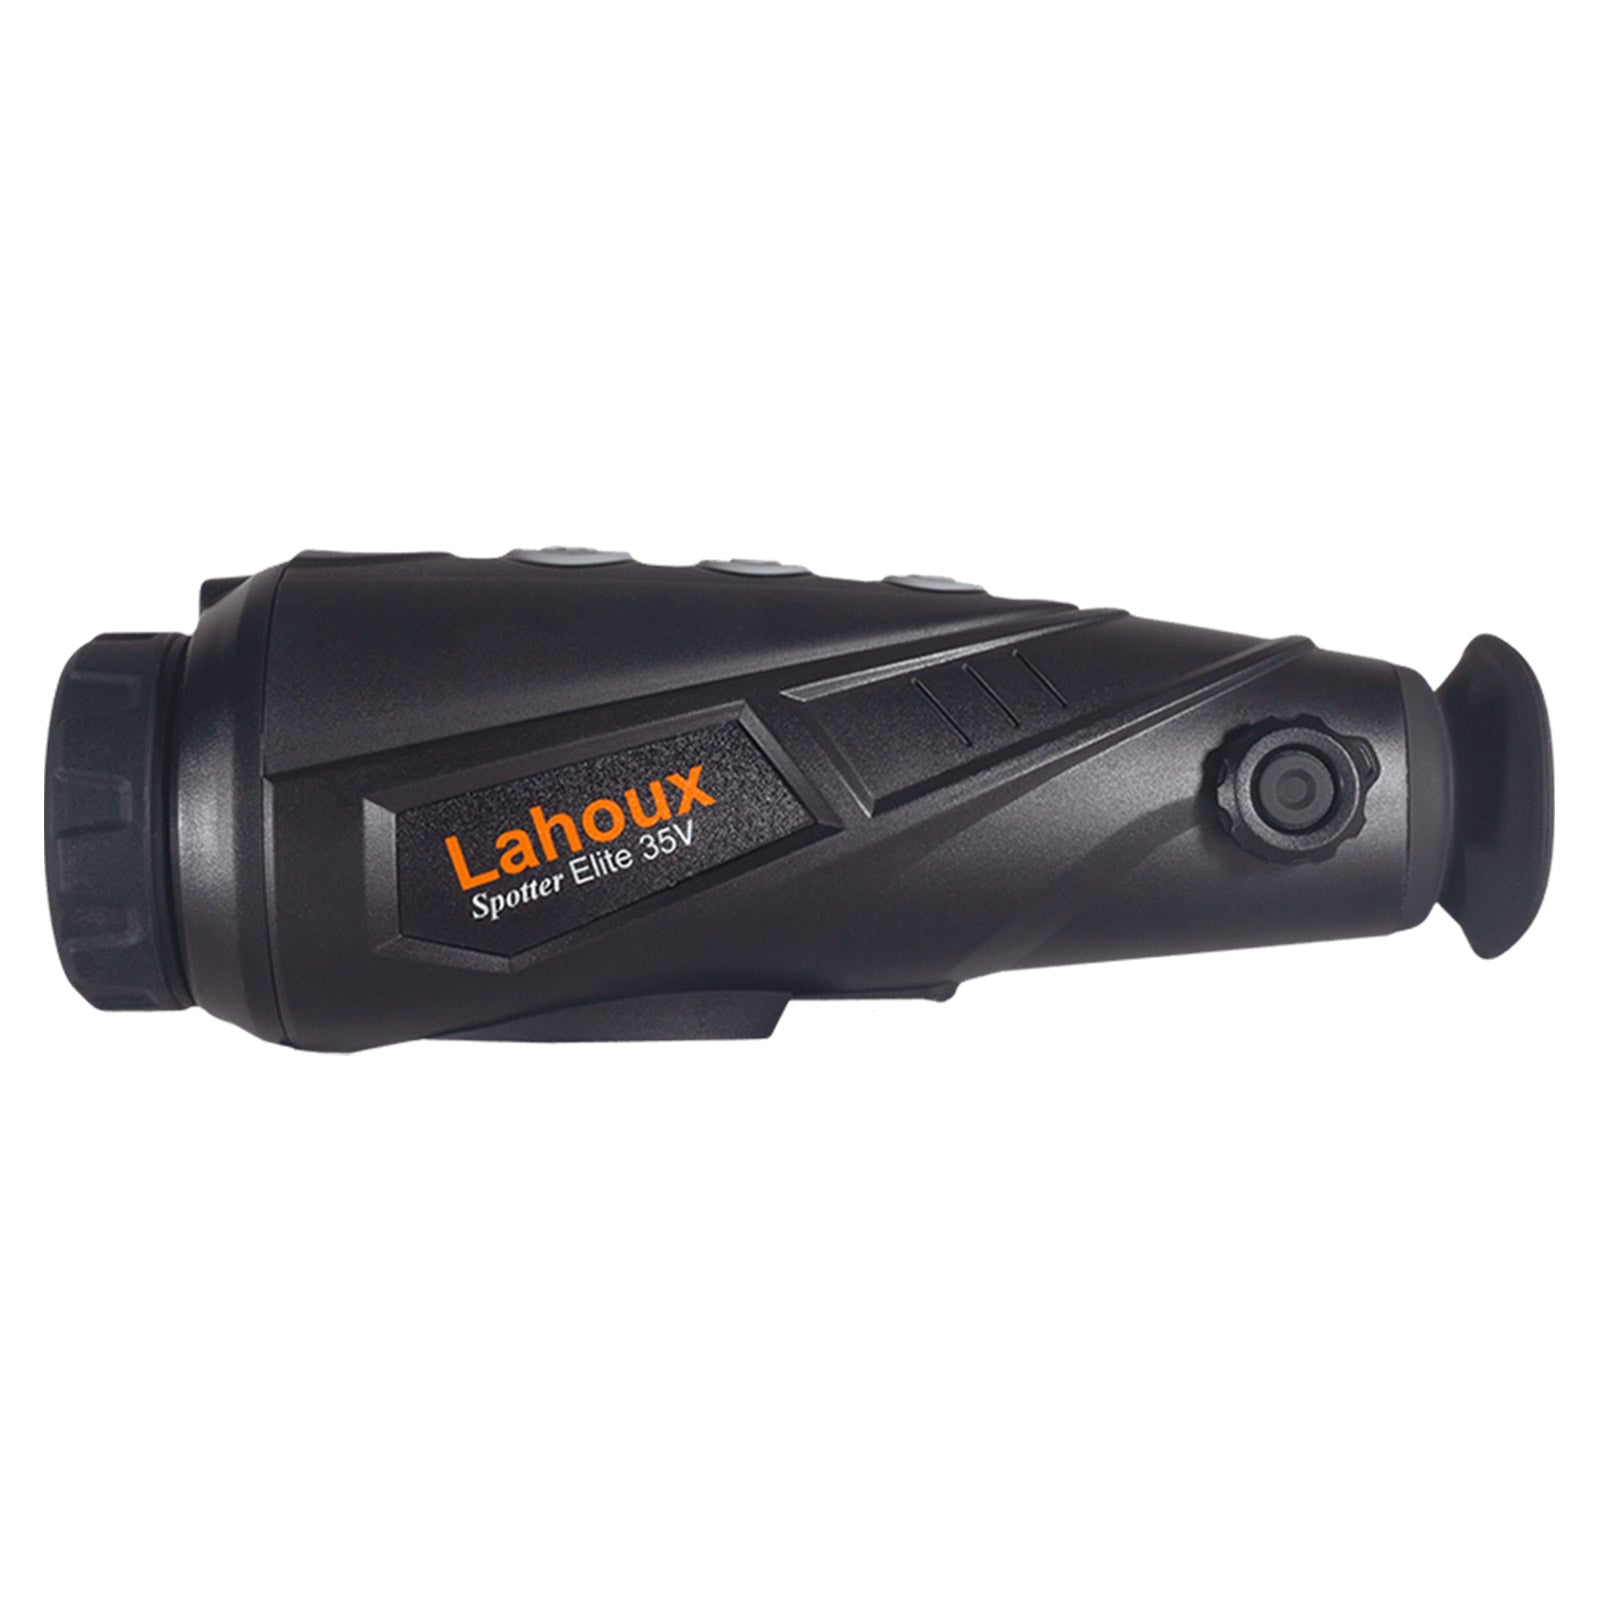 Es handelt sich hier um LAHOUX Spotter Elite 35V Wärmebildkamera für die Jagd.